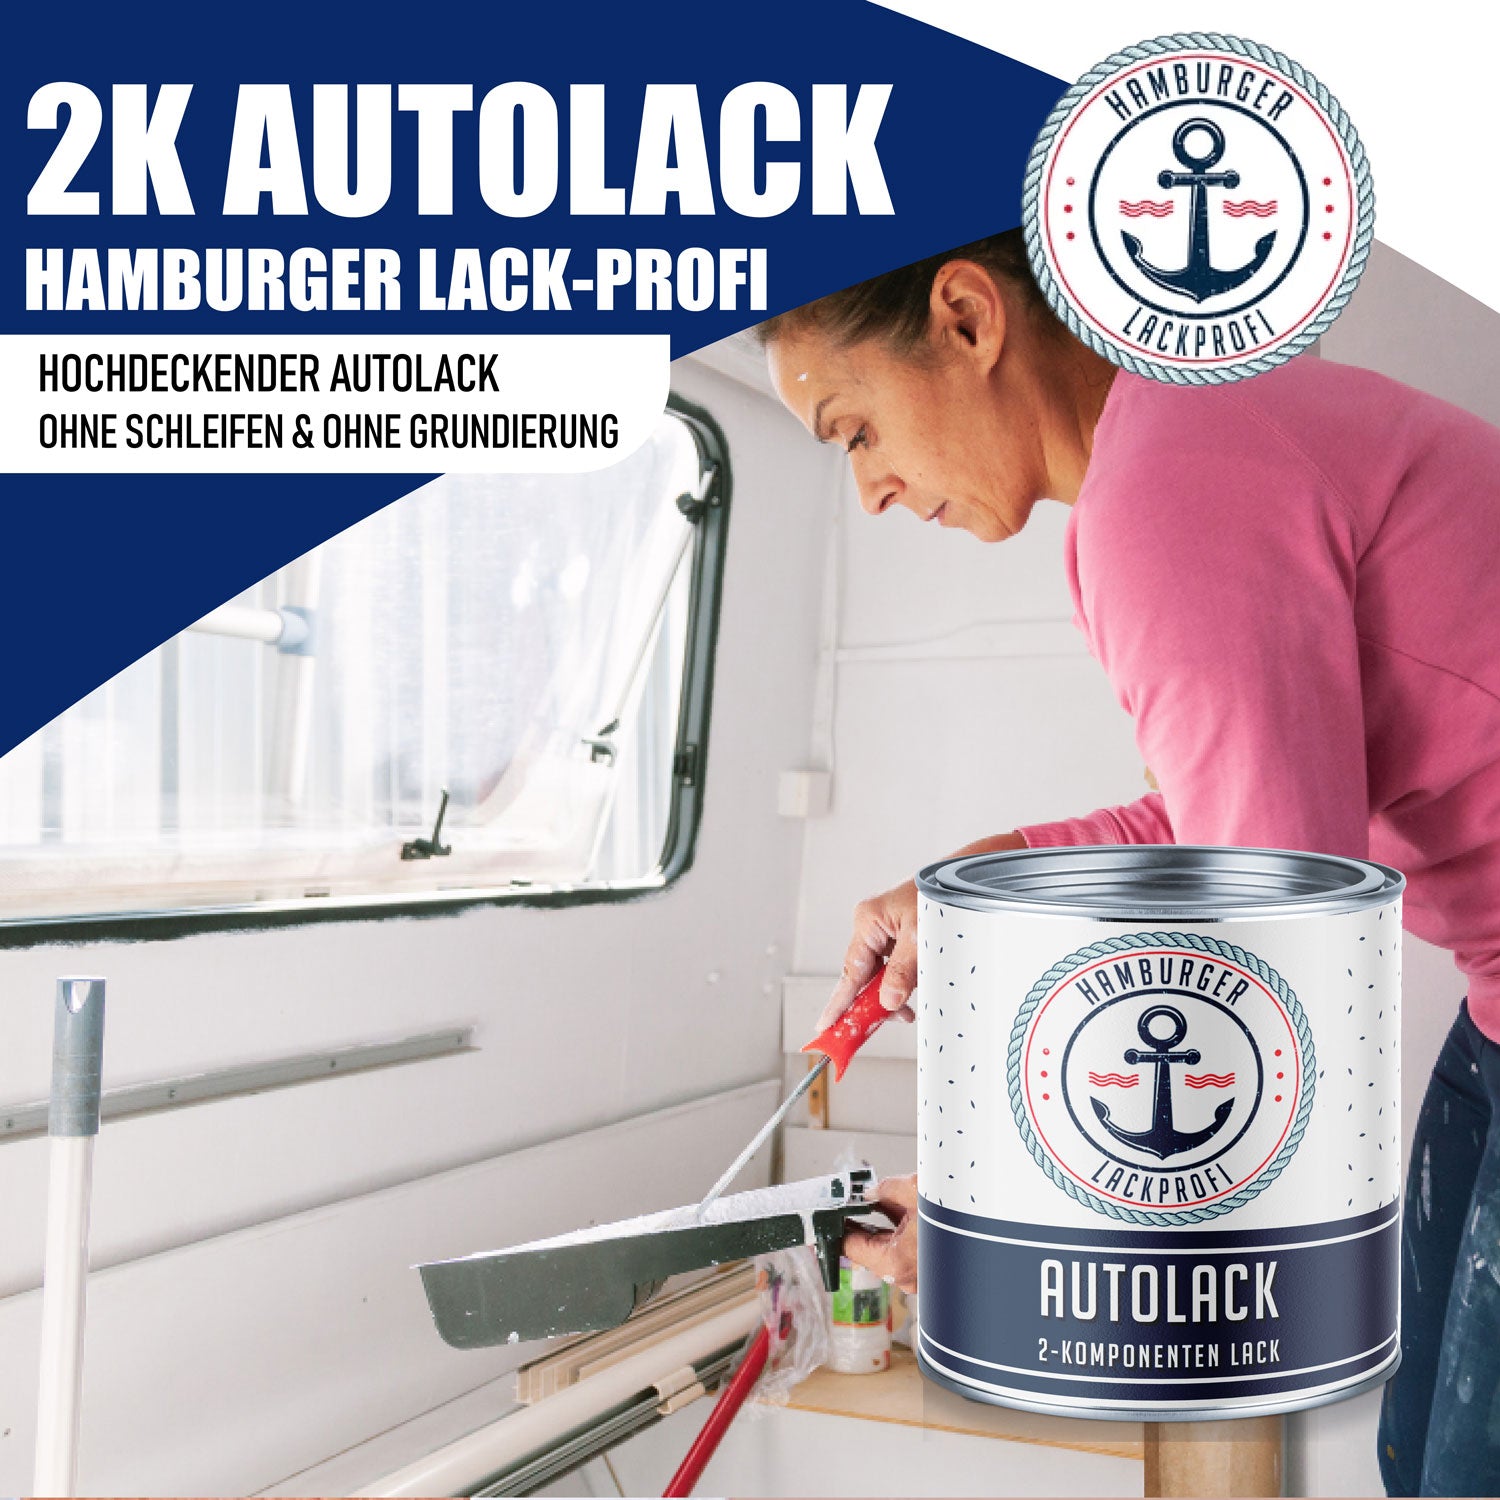 Hamburger Lack-Profi 2K Autolack Anthrazitgrau RAL 7016 - hochdeckend & rostschützend